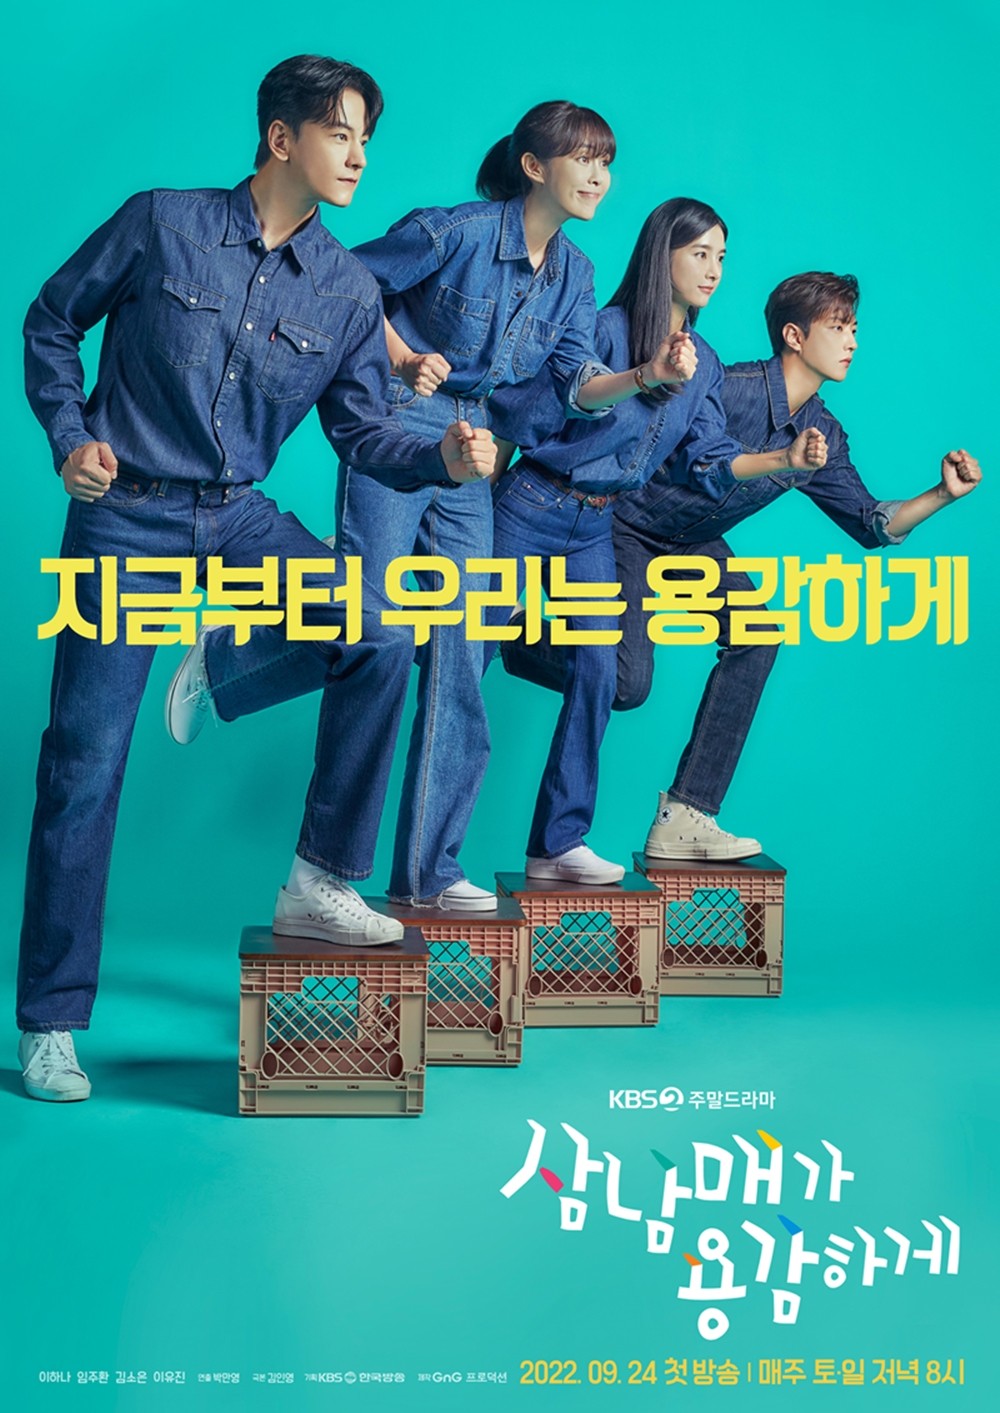 Phim Nước Hàn hoặc năm 2022: Ba u gan góc (Three Bold Siblings)